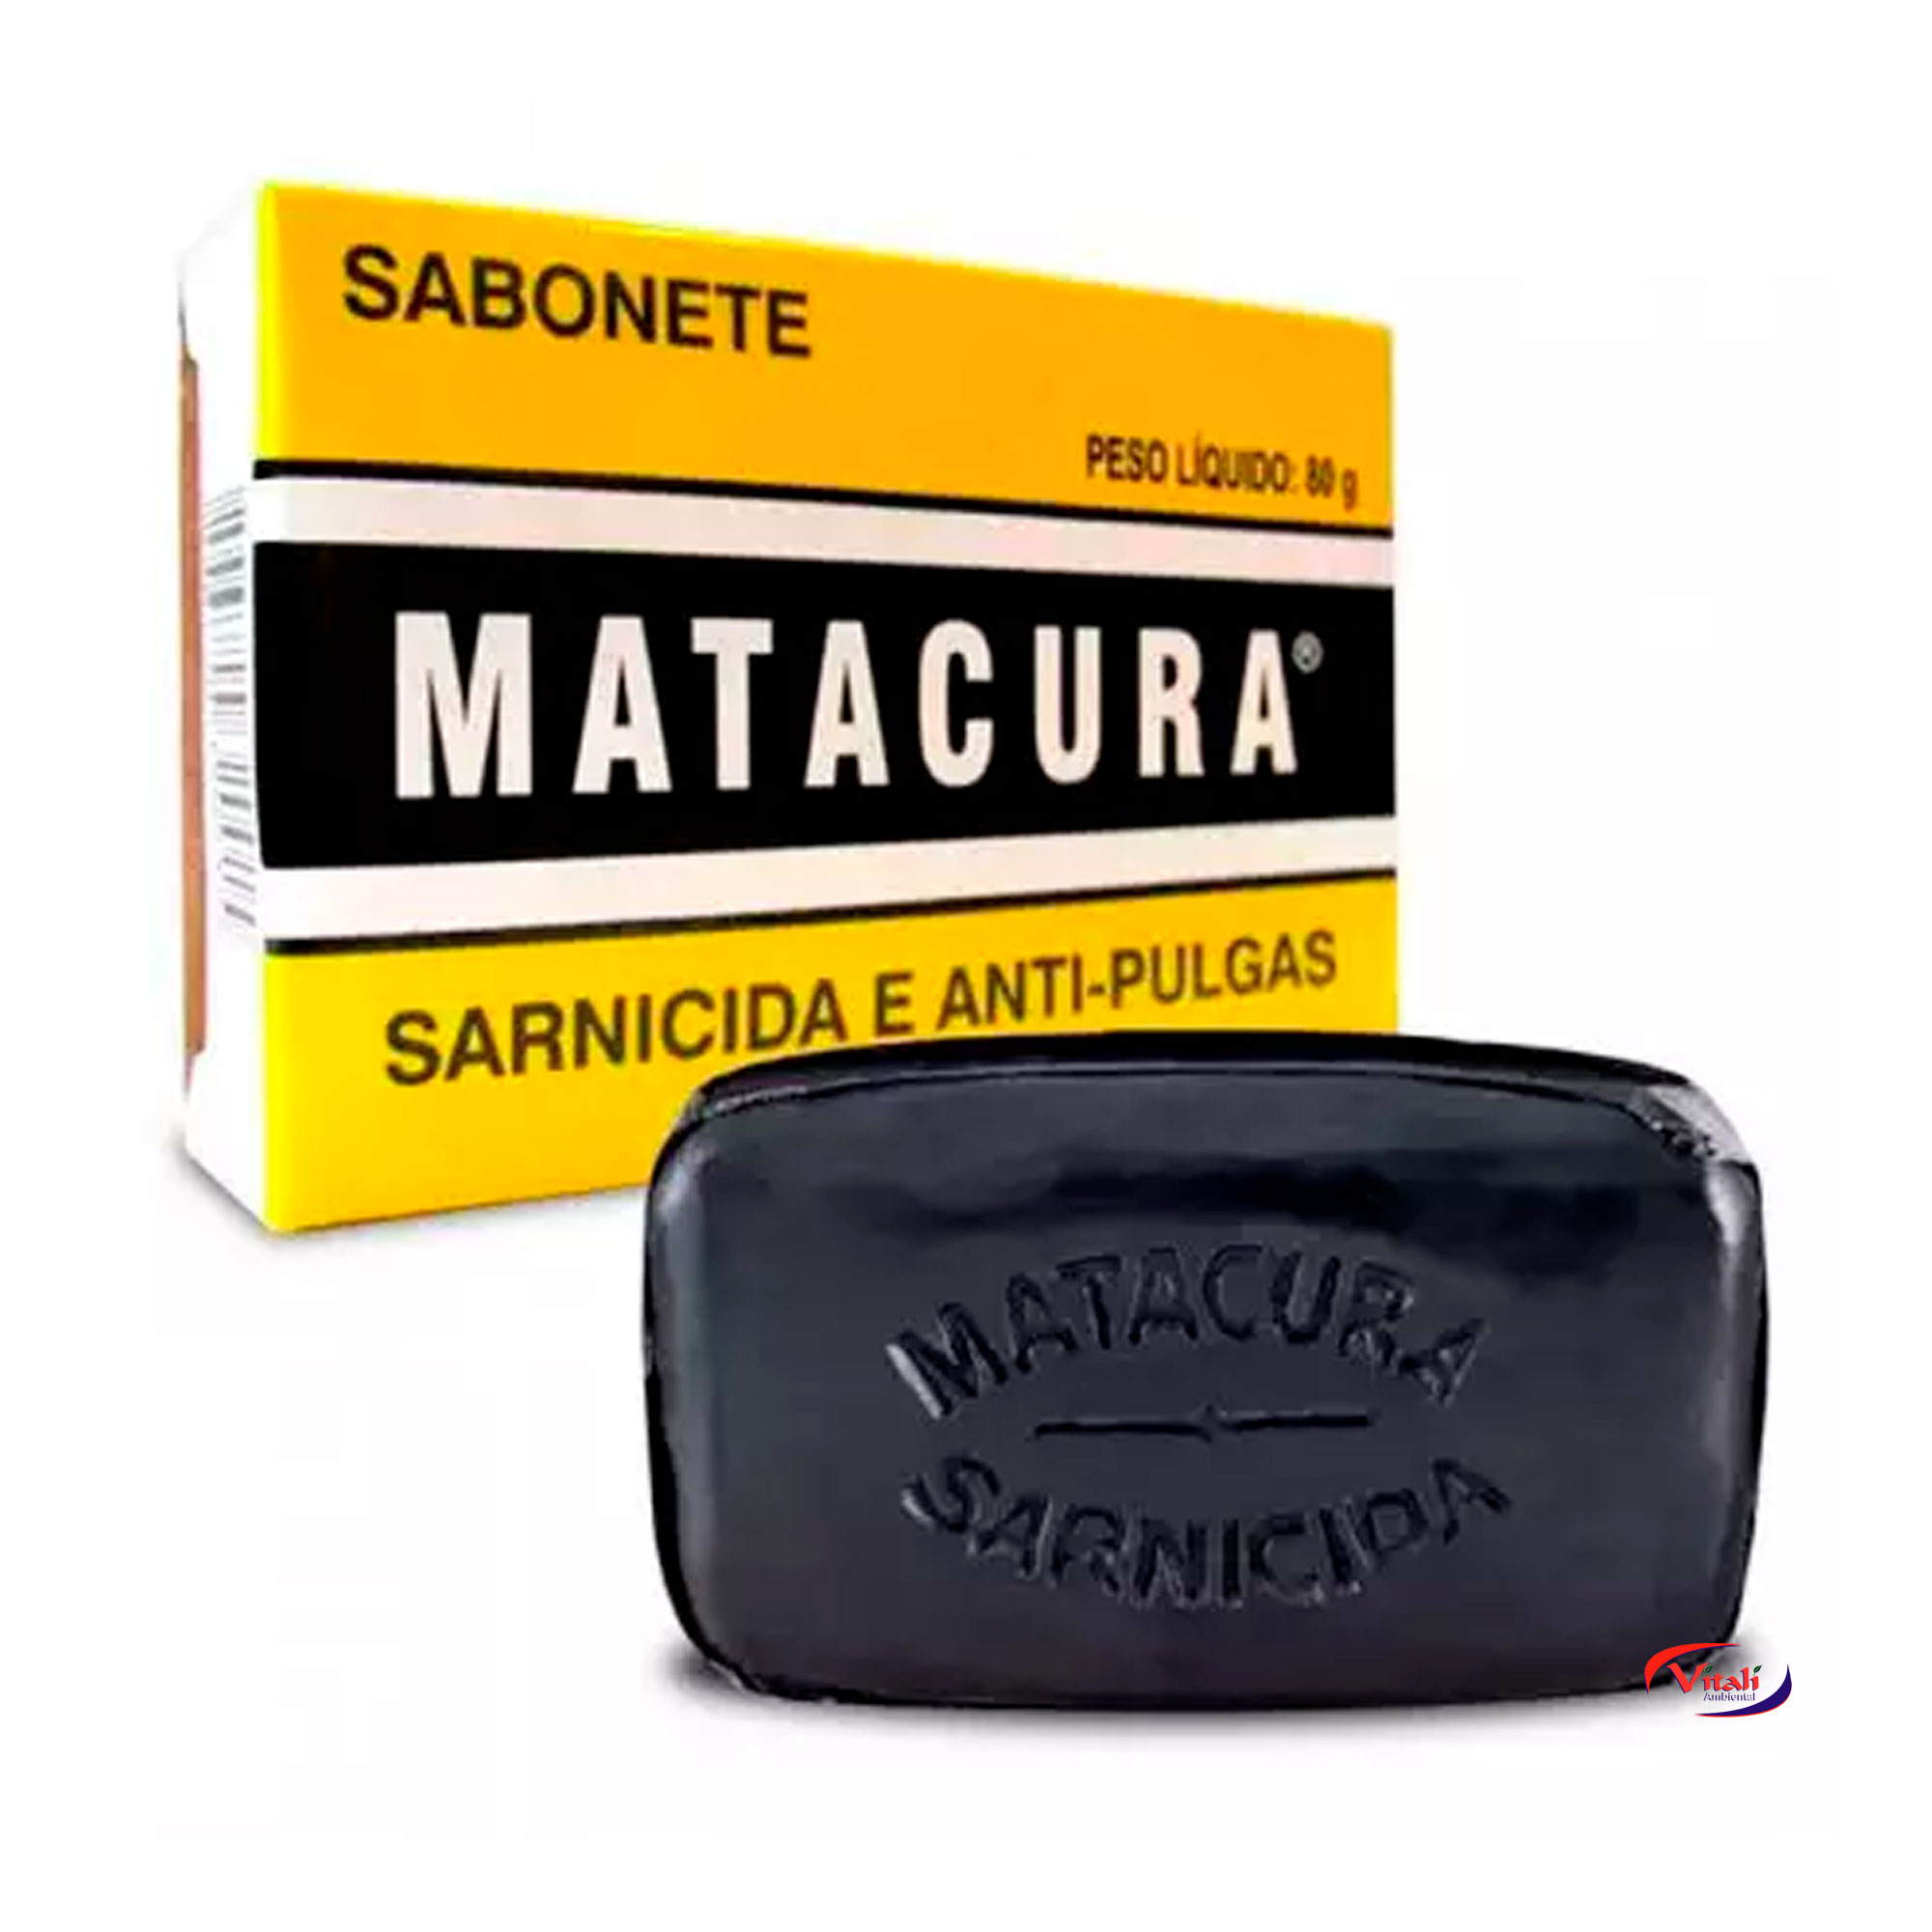 SABONETE MATACURA SARNICIDA 80GR